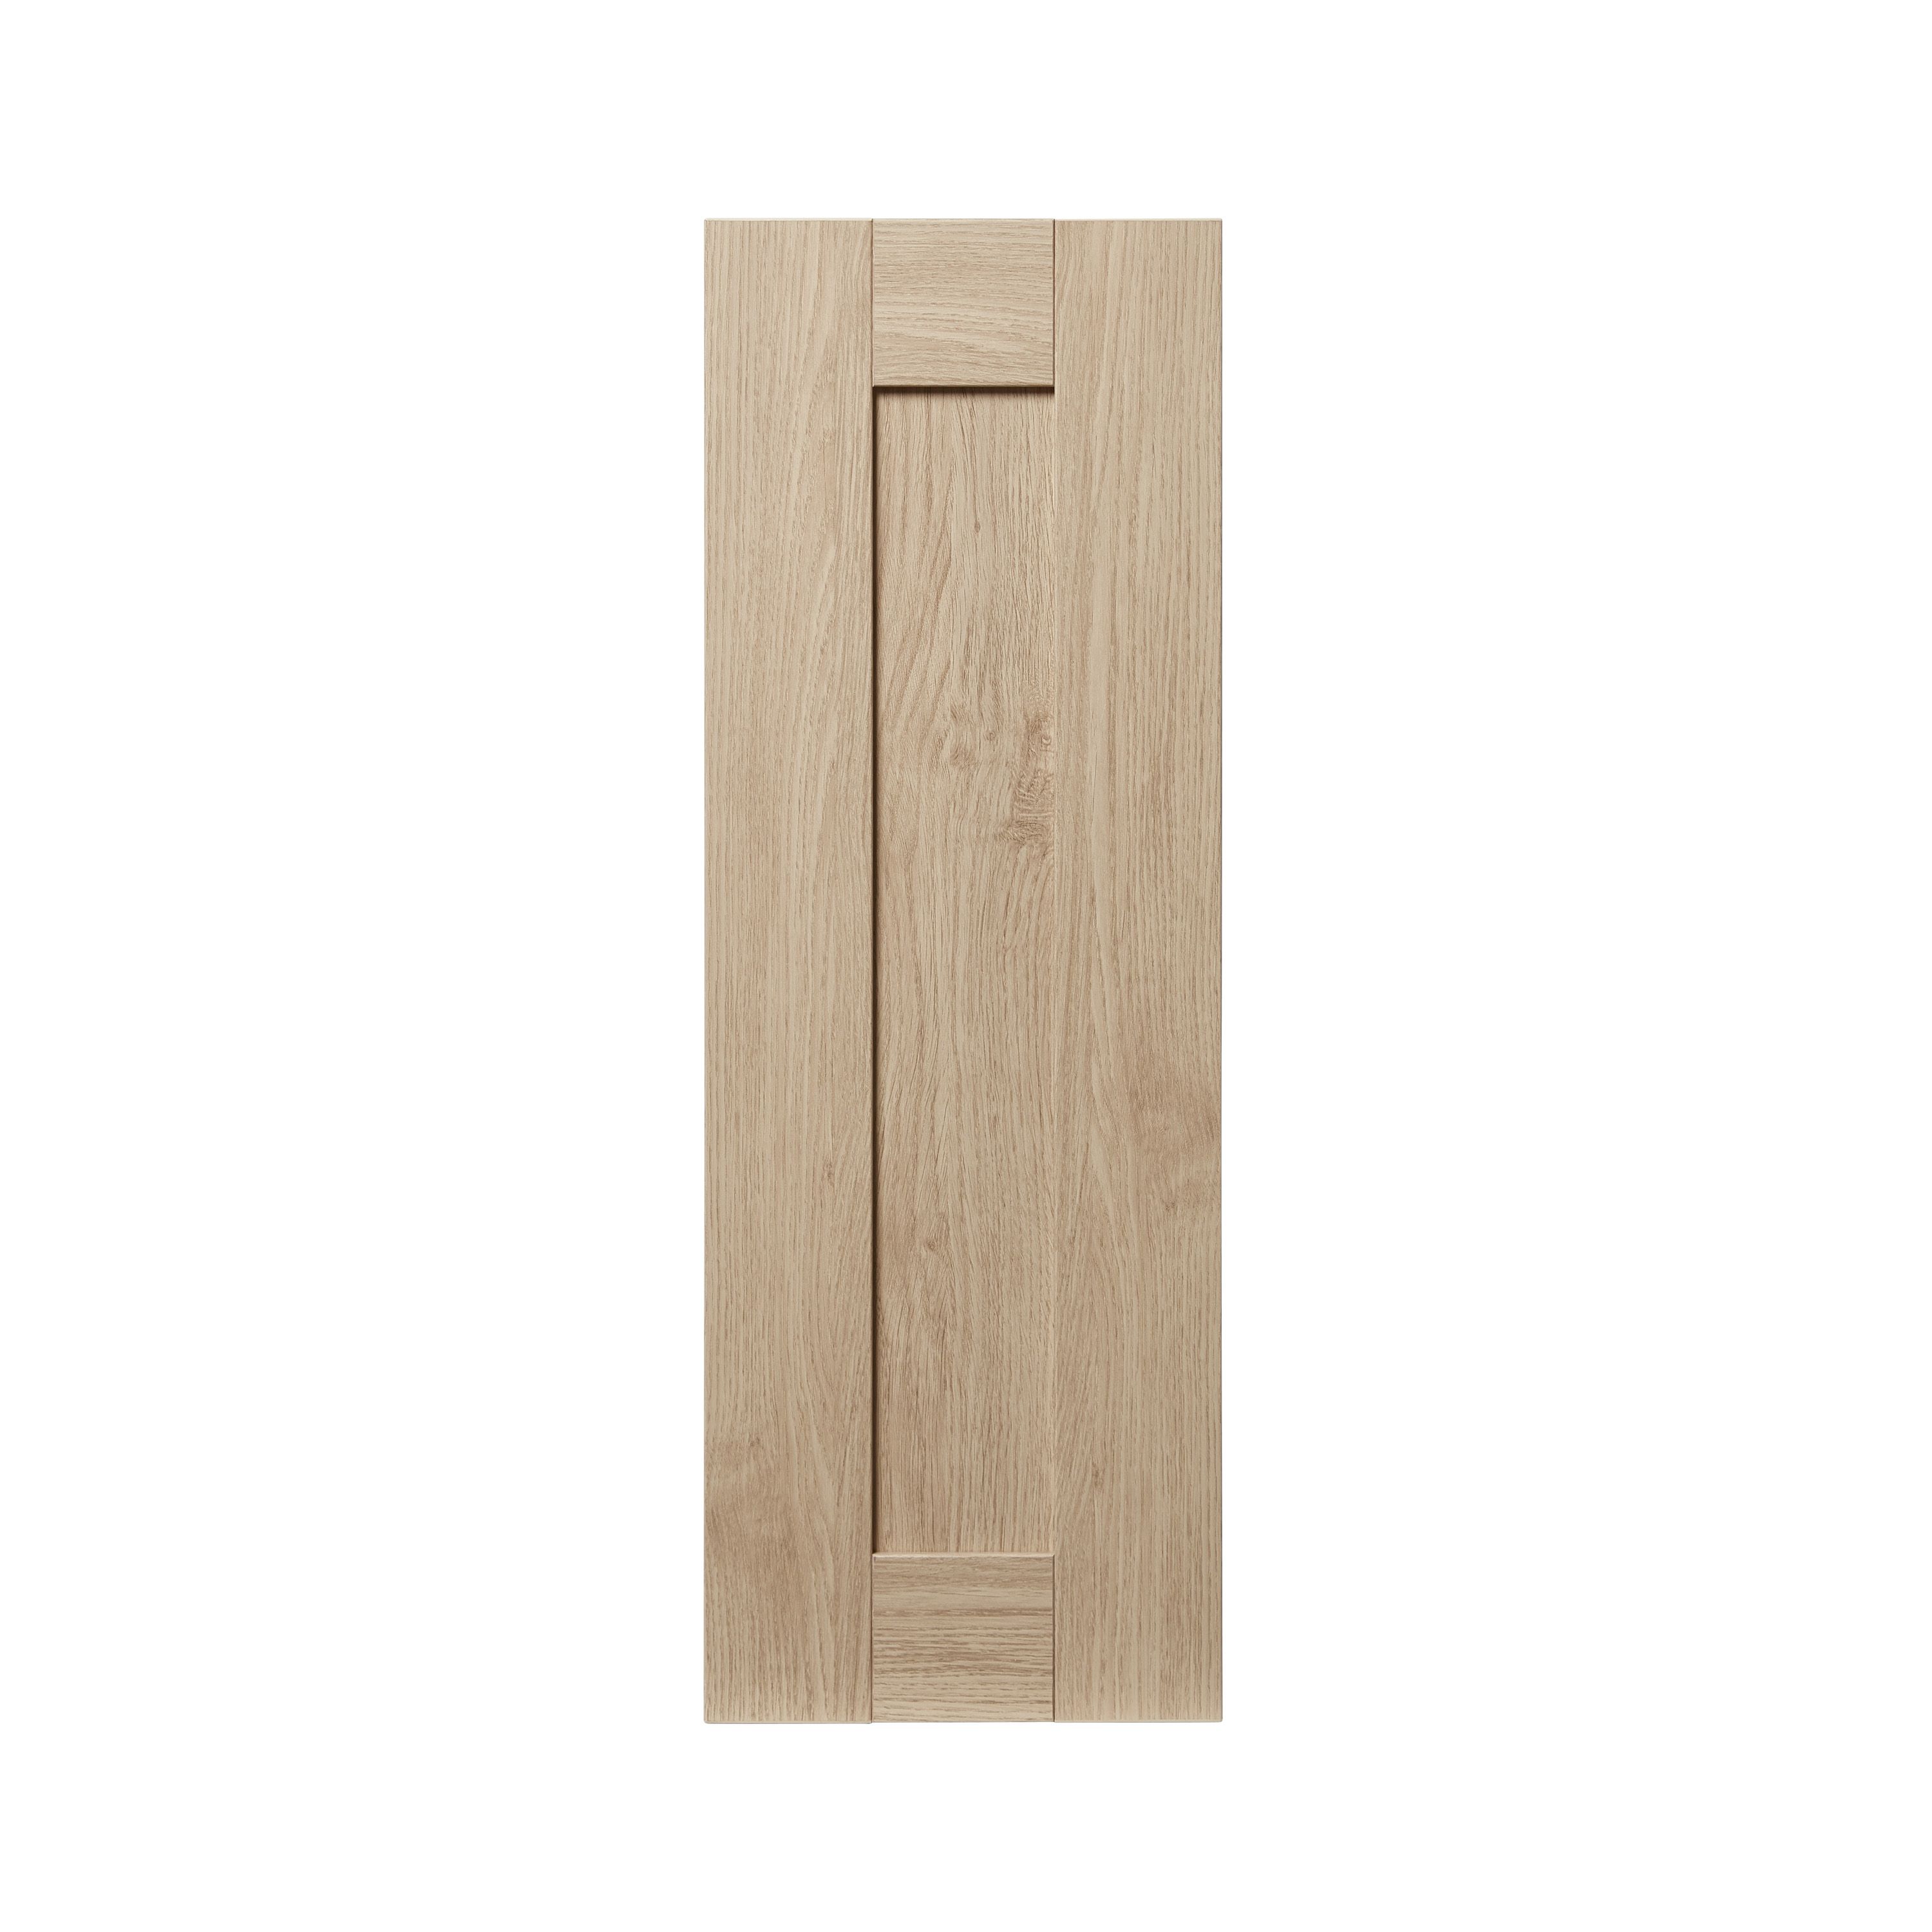 Goodhome Alpinia Oak Effect Shaker Highline Cabinet Door W